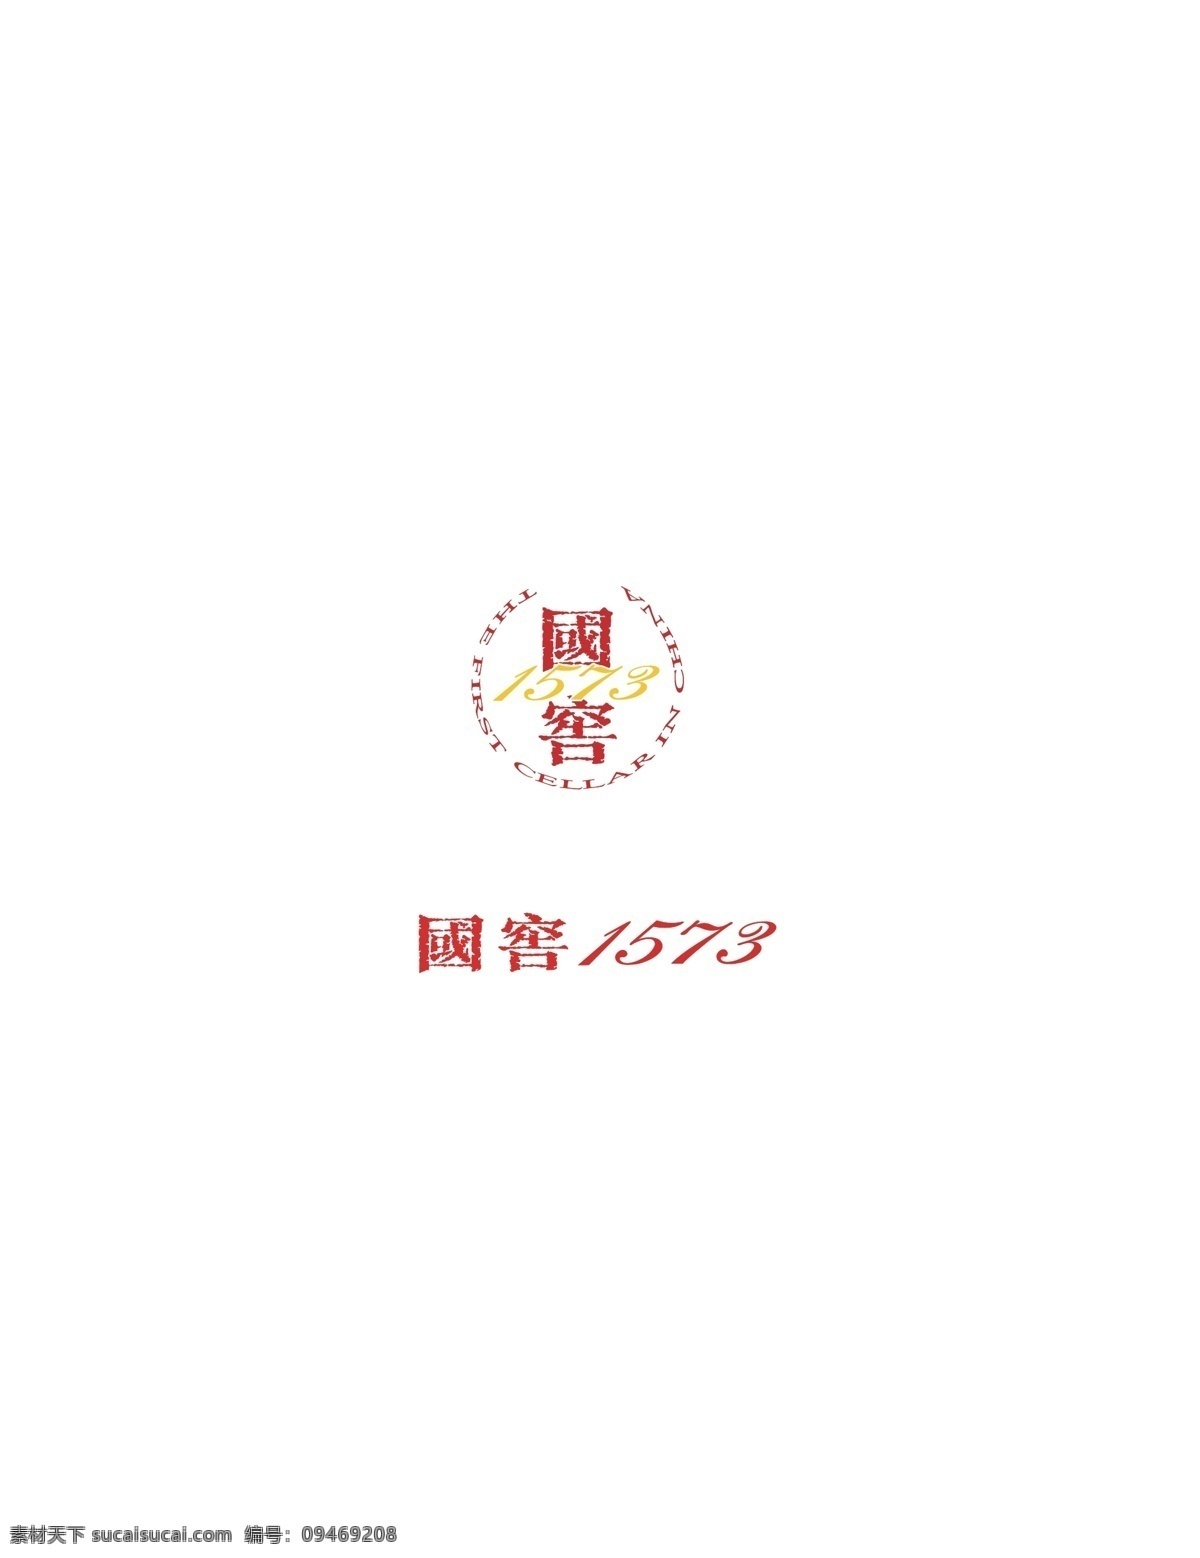 国 窖 1573 标志 矢量图 ai格式 国窖1573 白酒logo 矢量logo logo设计 创意设计 设计素材 标识 企业标识 图标 logo 标志矢量 标志图标 其他图标